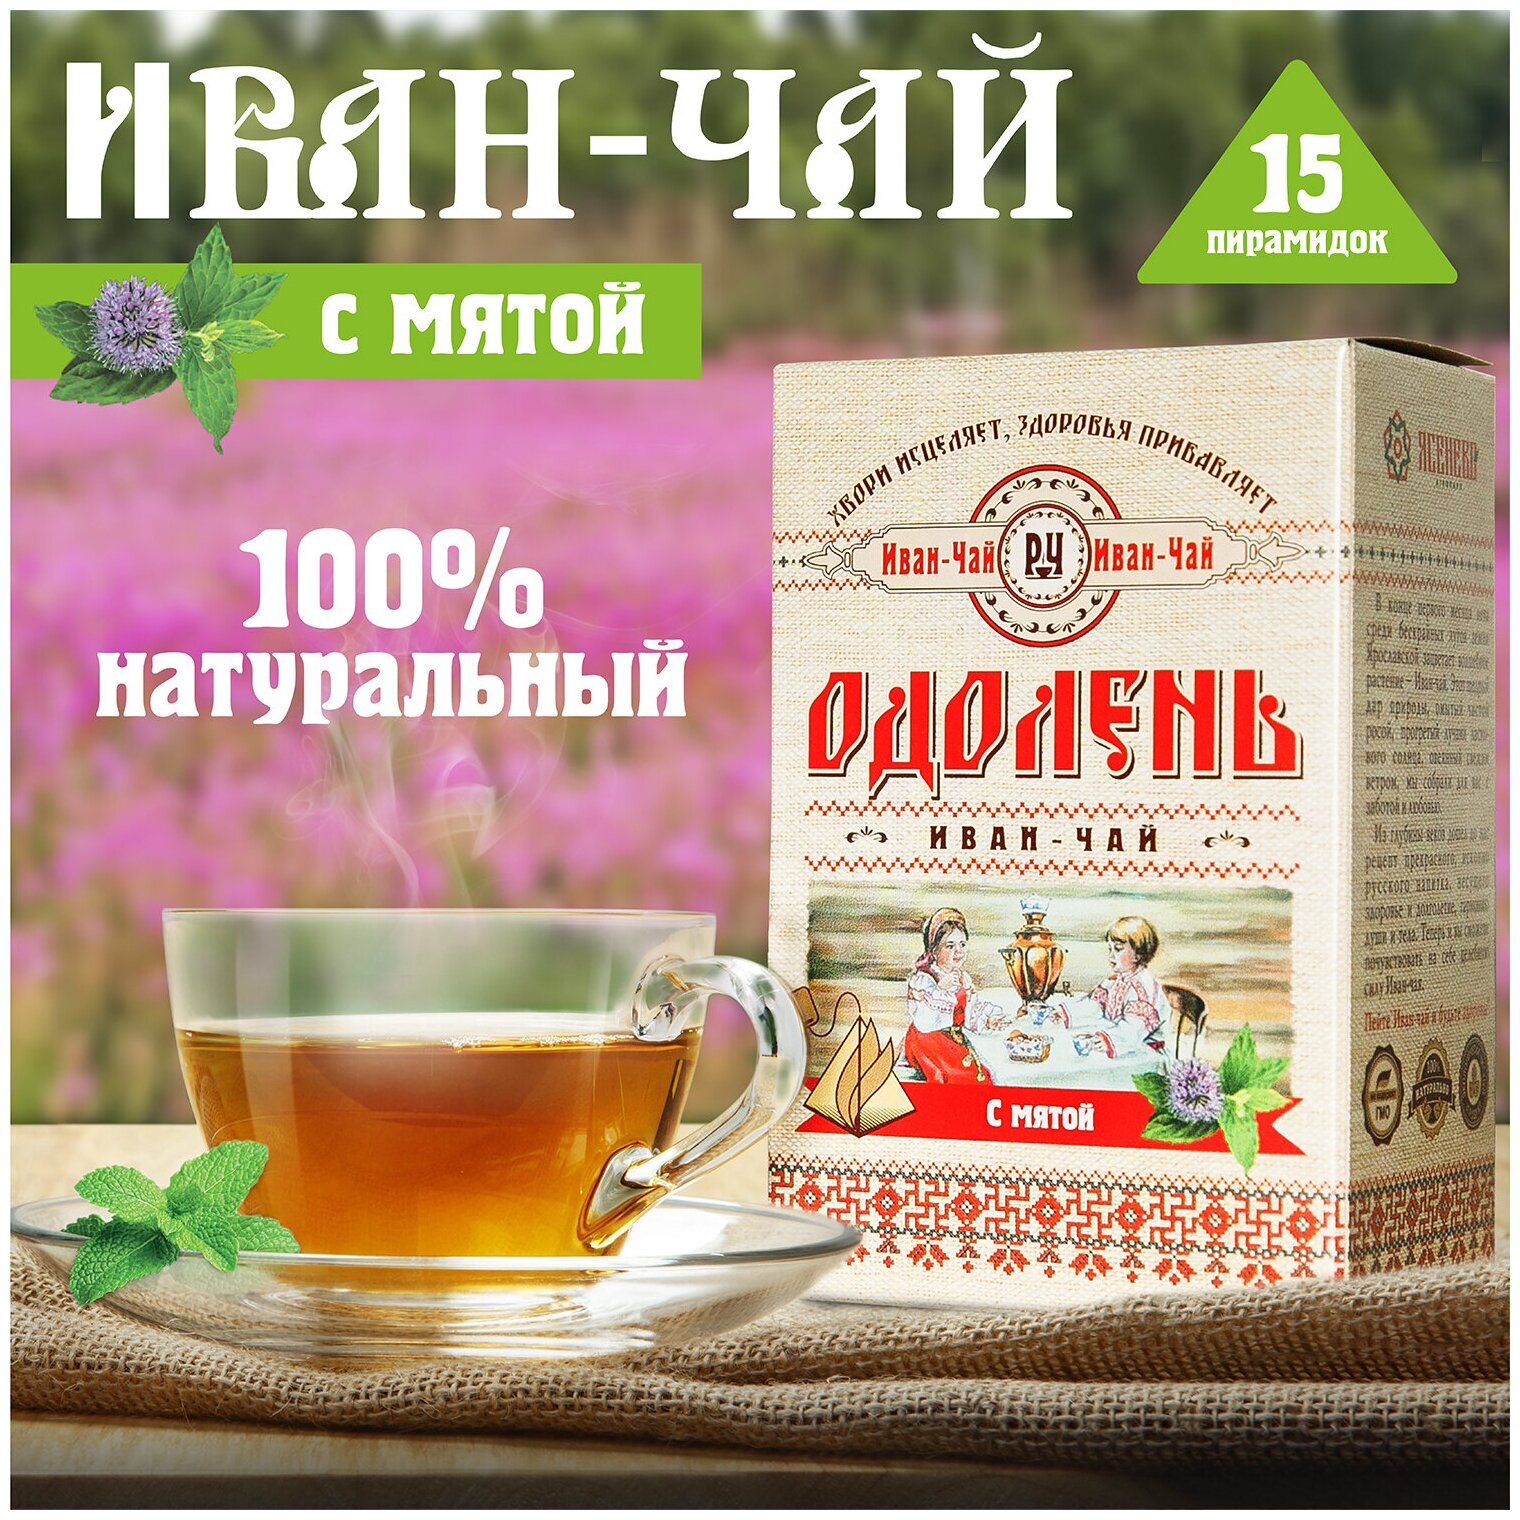 Чай в пирамидках "Одолень Иван-чай с мятой", ферментированный иван-чай (кипрей) с листьями мяты, 15 пирамидок по 2г